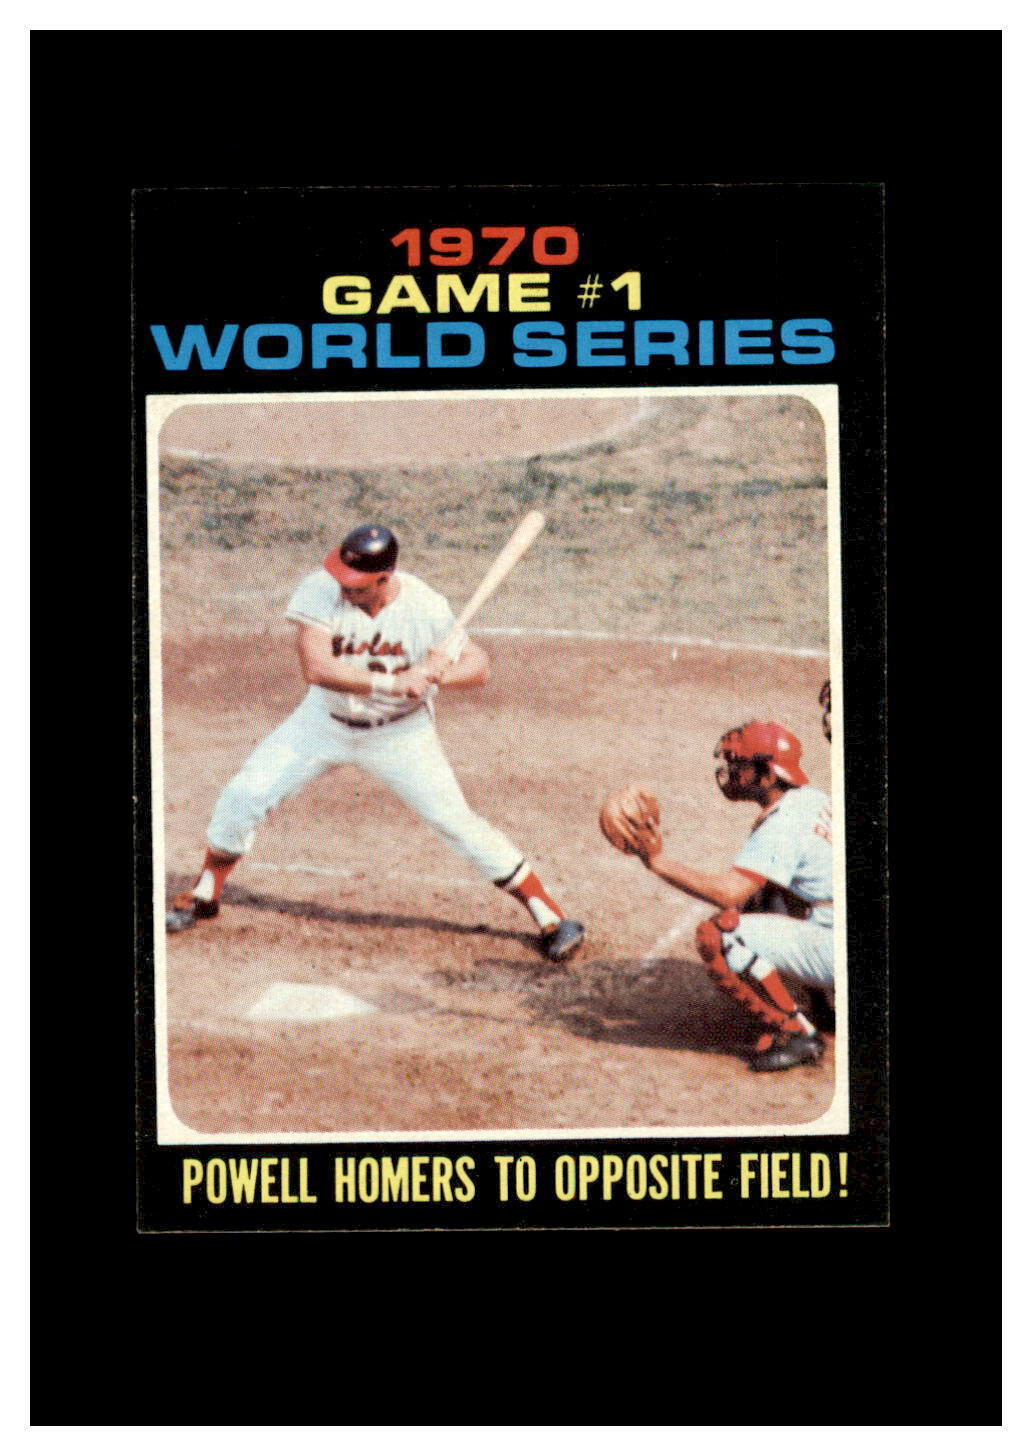 1971 Topps Set Break #327 World Series Game 1 NR-MINT *GMCARDS*